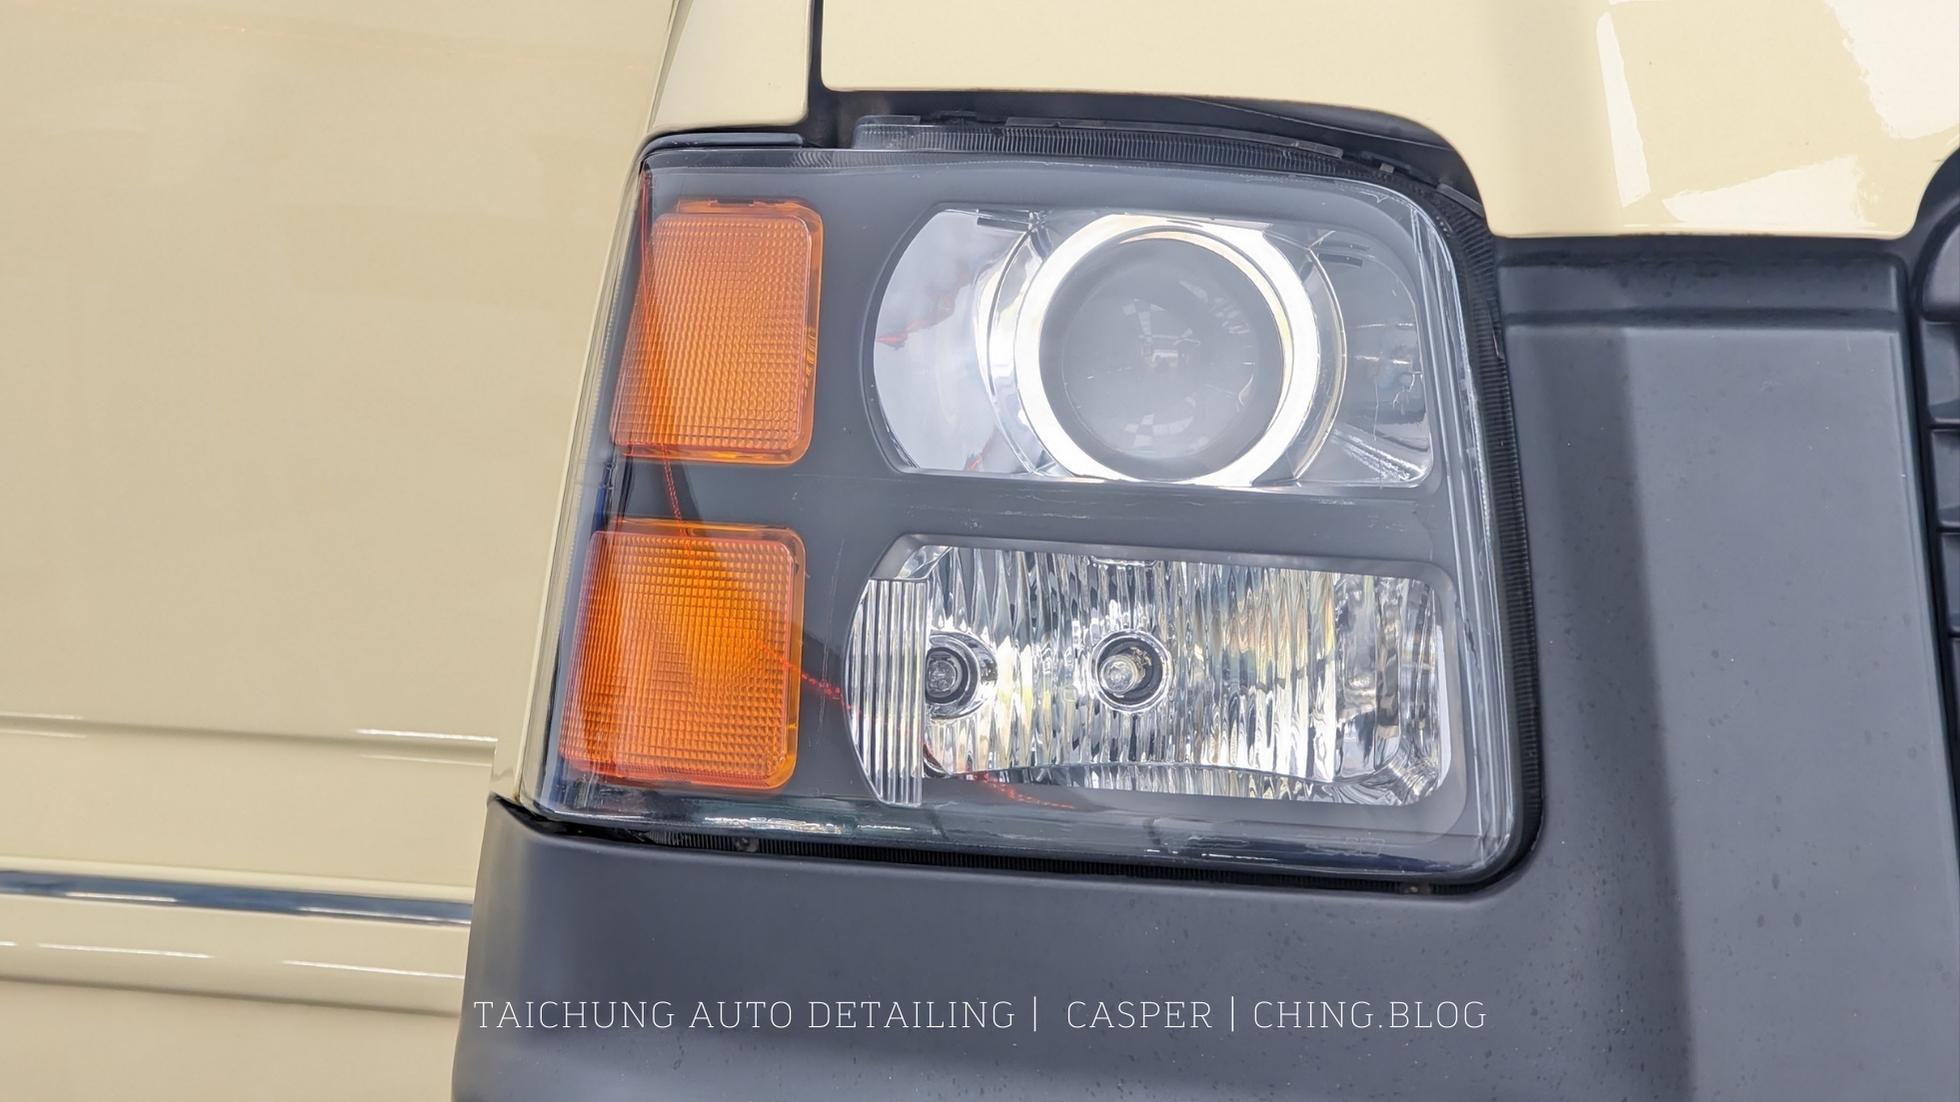 CASPER鎧特汽車美容》台中汽車鍍膜、包膜，精緻洗車推薦